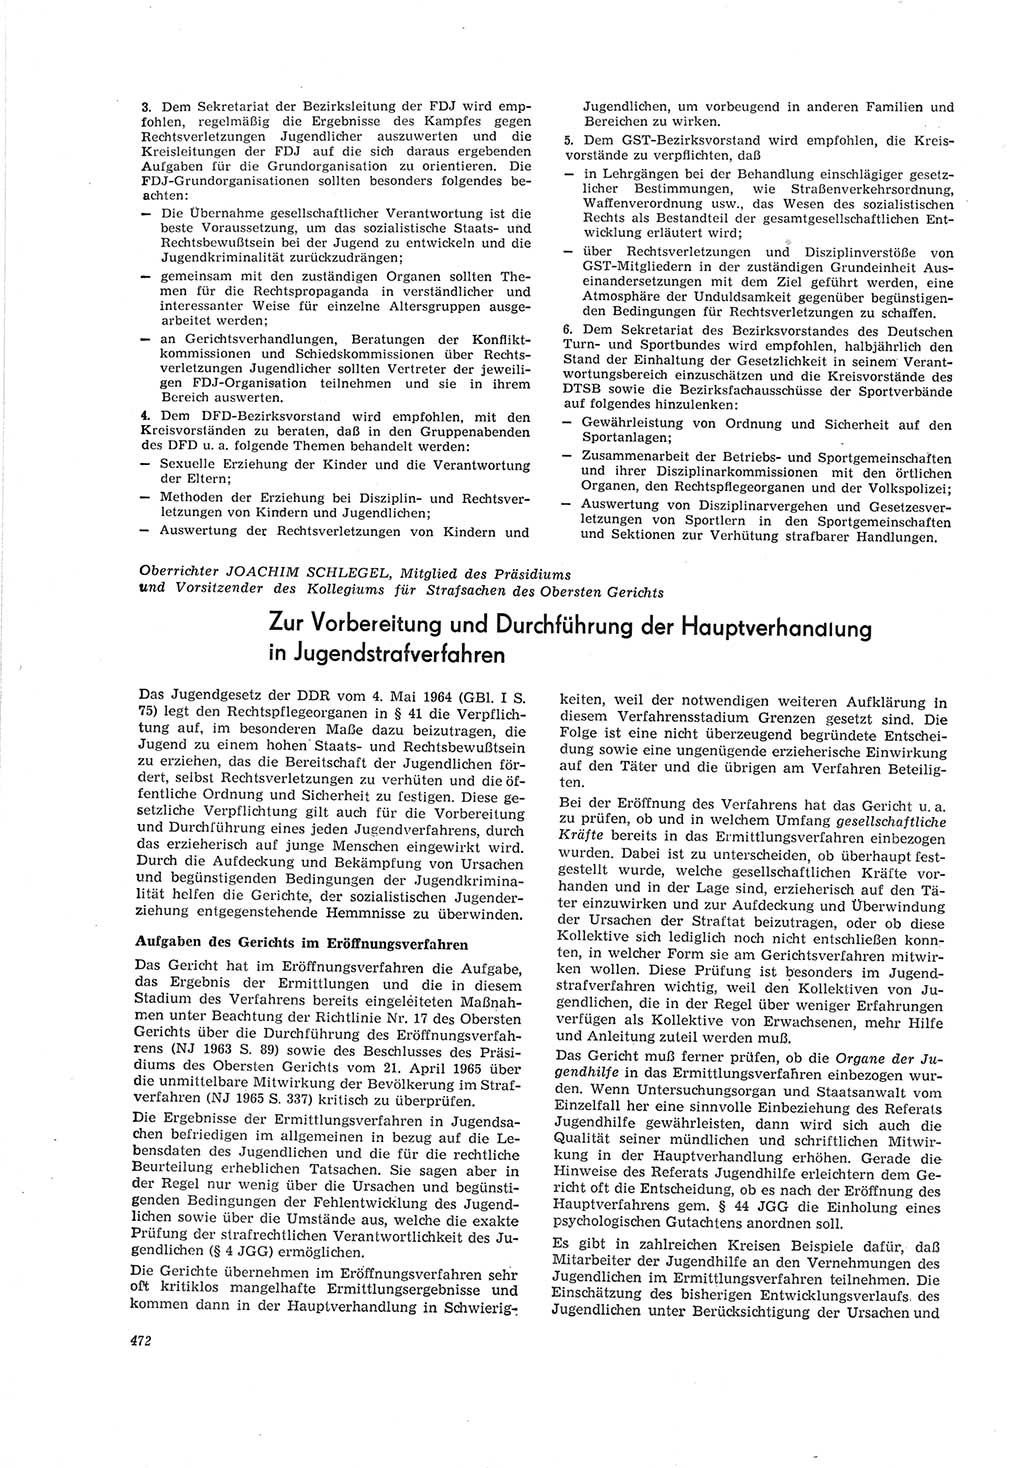 Neue Justiz (NJ), Zeitschrift für Recht und Rechtswissenschaft [Deutsche Demokratische Republik (DDR)], 19. Jahrgang 1965, Seite 472 (NJ DDR 1965, S. 472)